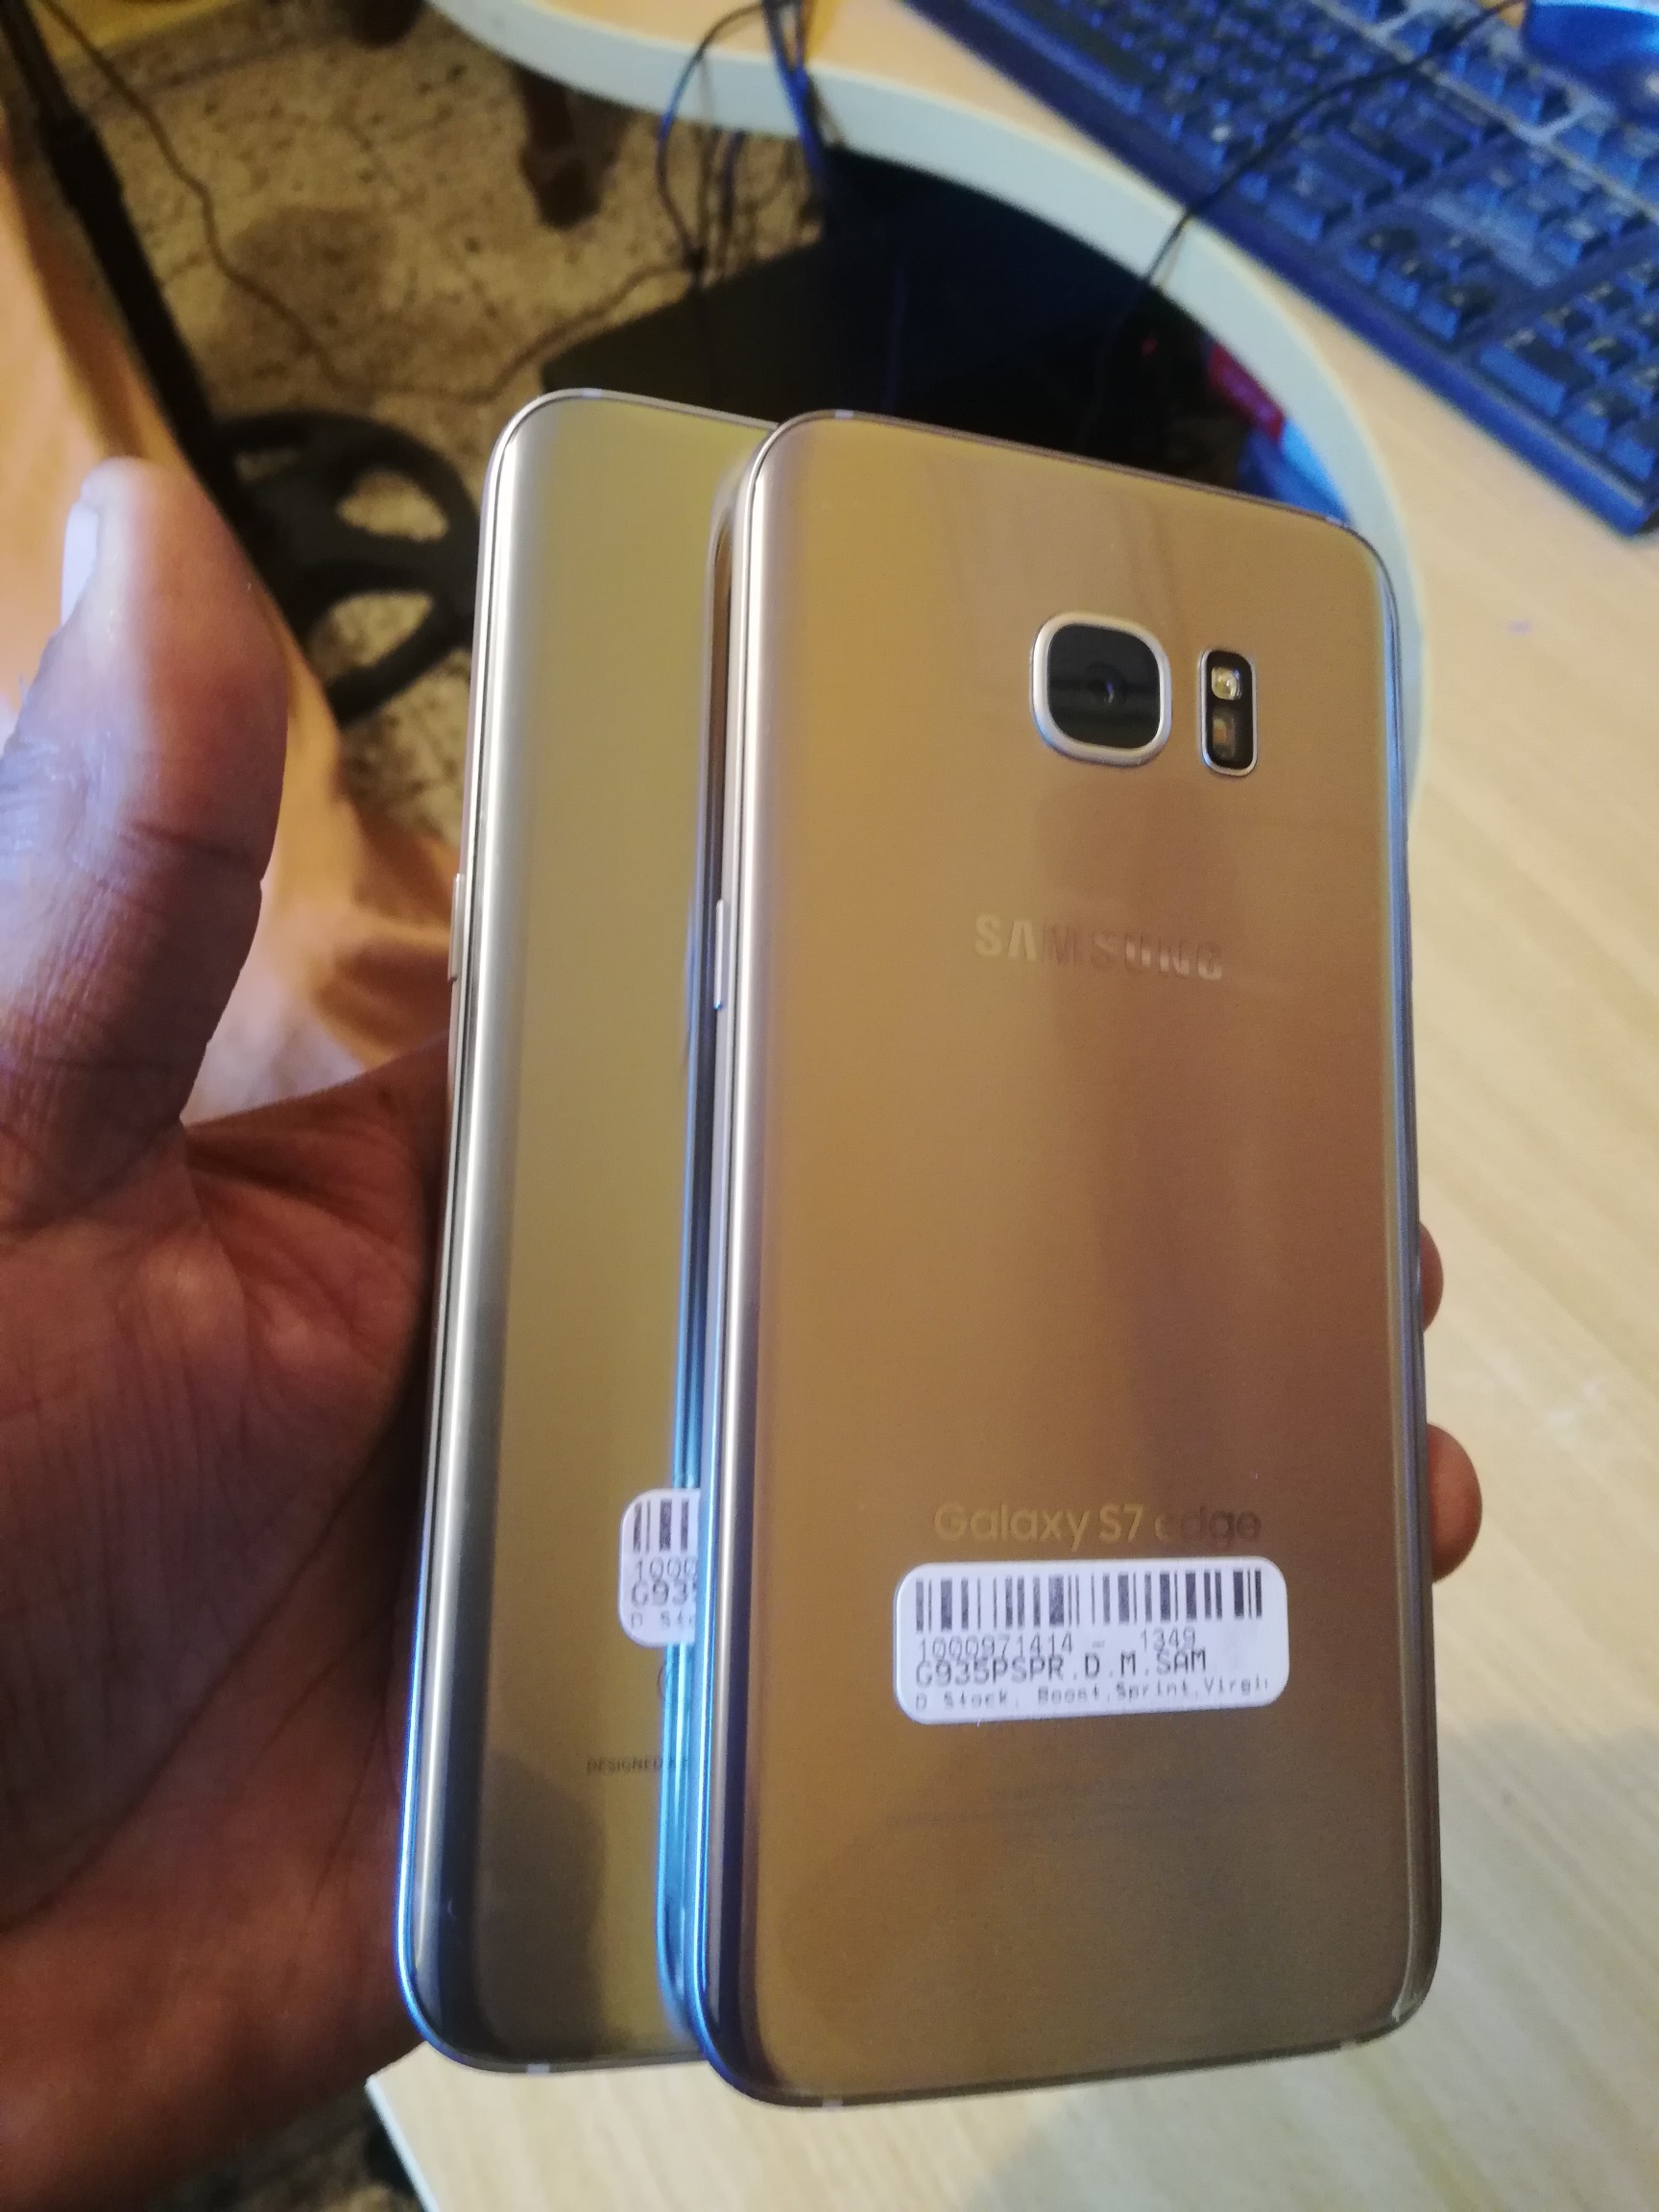 celulares y tabletas - Samsung galaxy S7 edge 32gb gold internacional condiciones desbloqueado.